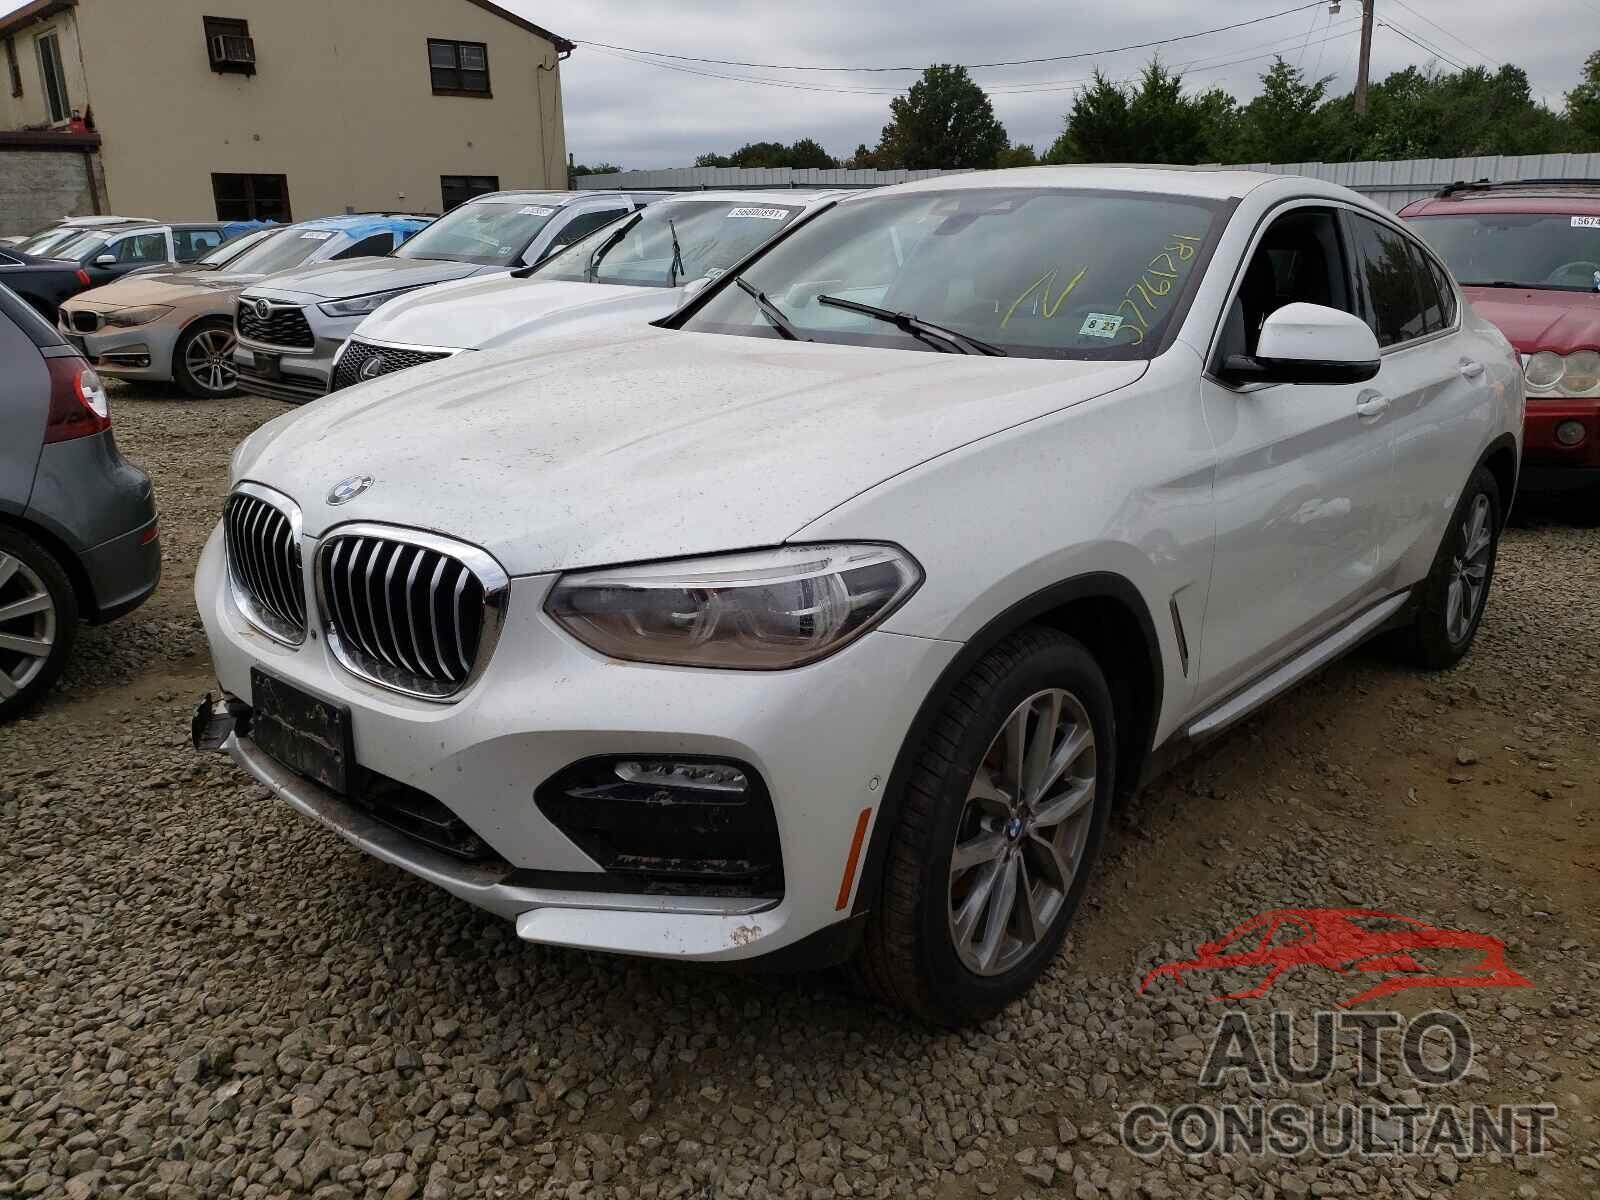 BMW X4 2019 - 5UXUJ3C57KLG51863